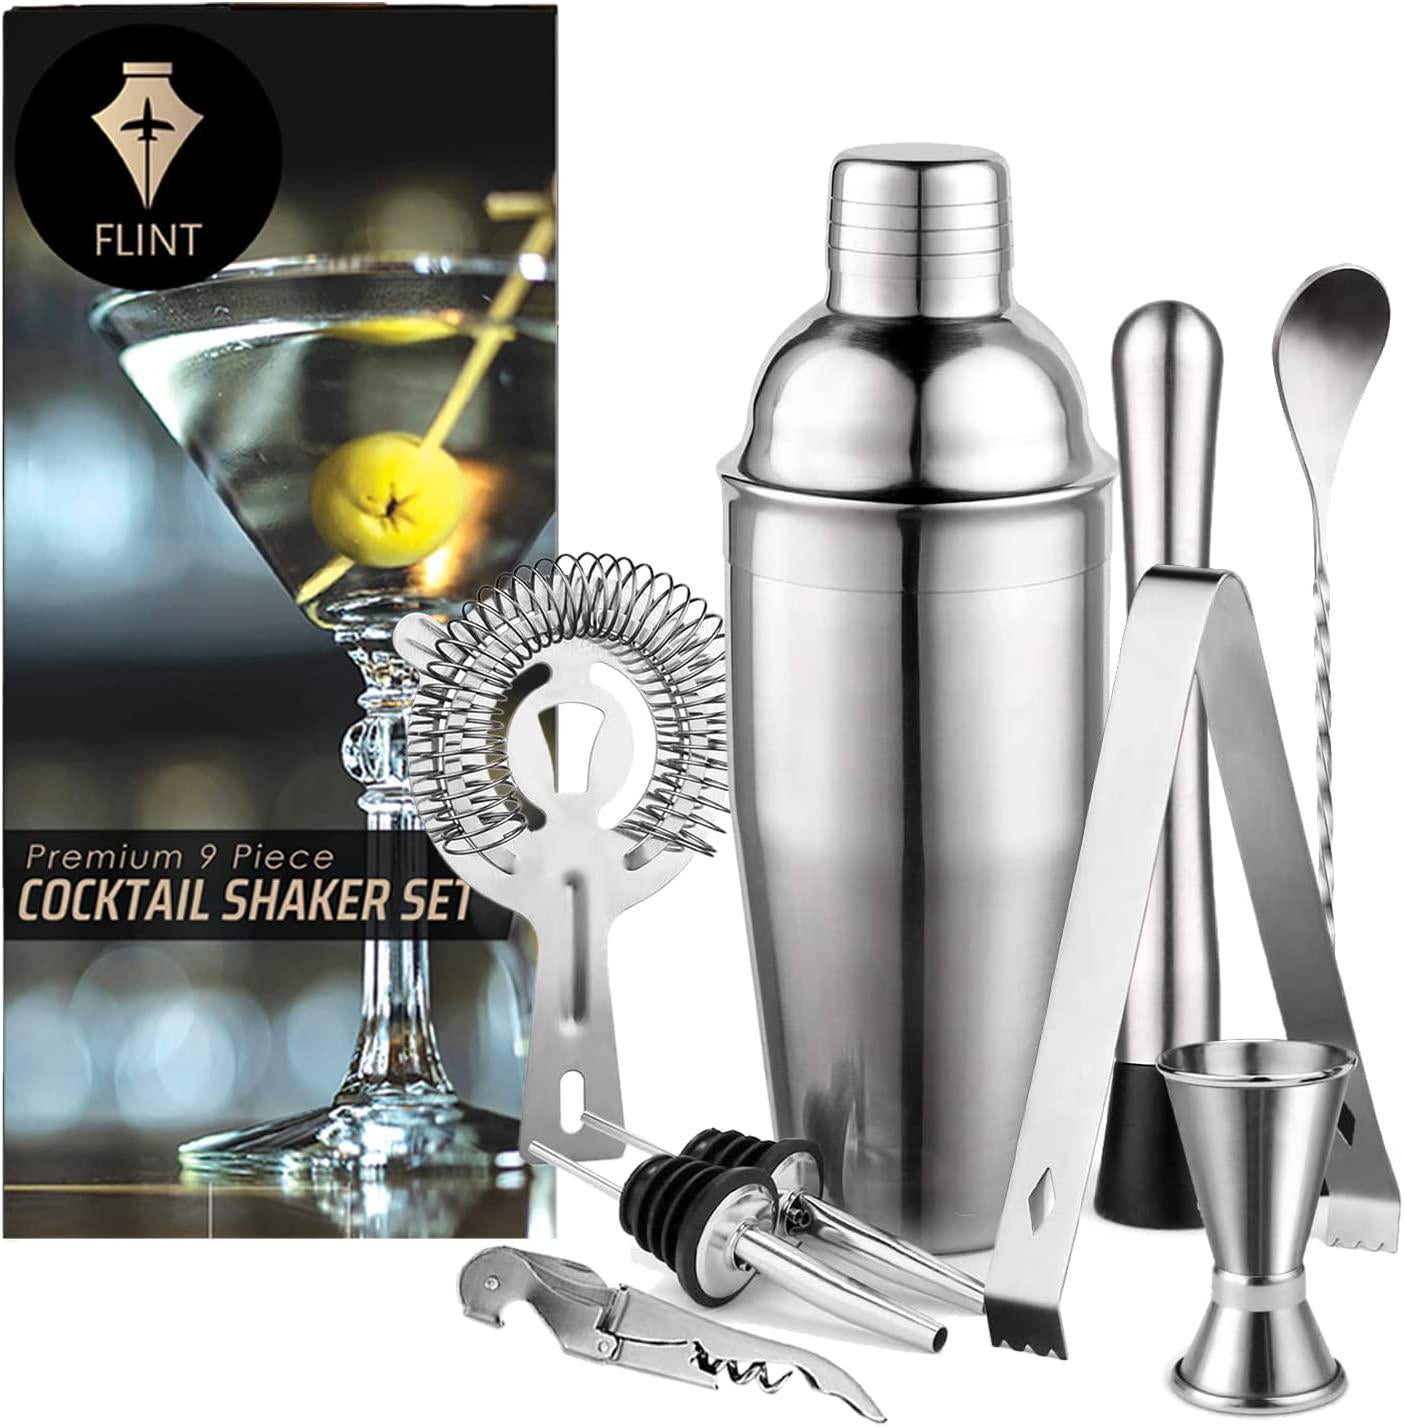 Flint, FLINT Cocktail Shaker Gift Set - 9 PCS Drink Mixing Barware Set | 750ml Cocktail Shaker, Mixing Spoon, Muddler, Ice Tongs, Jigger, Strainer, Bottle Opener, 2 Pourers | Home Bartending Kit